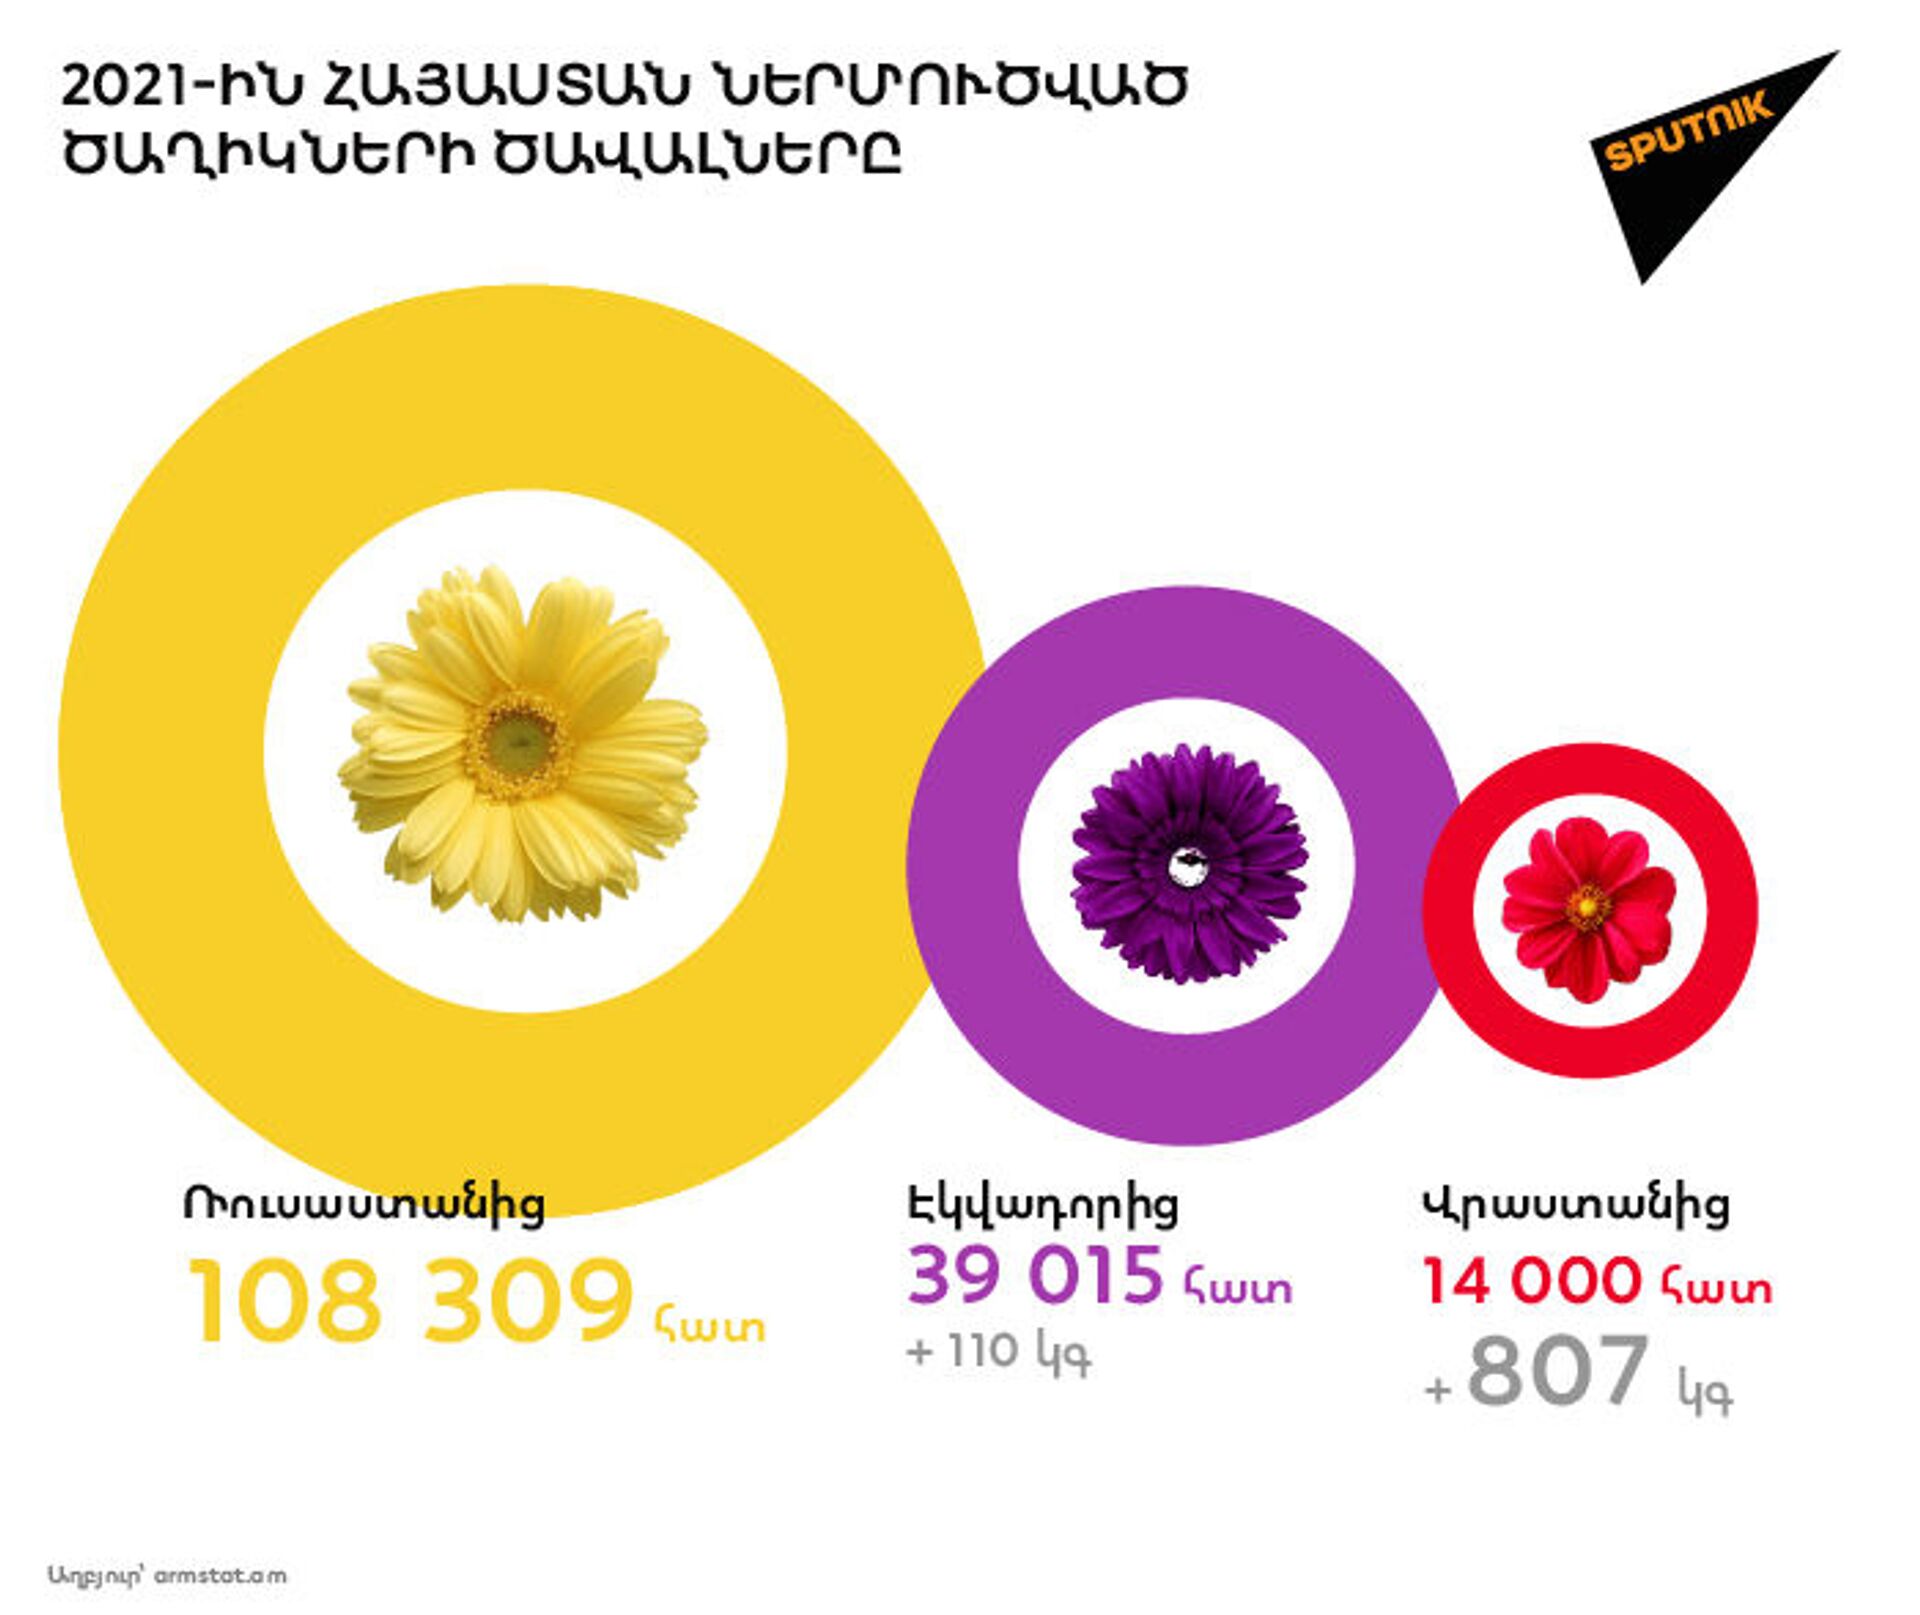 Ծաղիկներ, ծաղիկներ... ինչպե՞ս է Հայաստանում վերջին տարիներին զարգացել ծաղկի շուկան - Sputnik Արմենիա, 1920, 07.04.2021